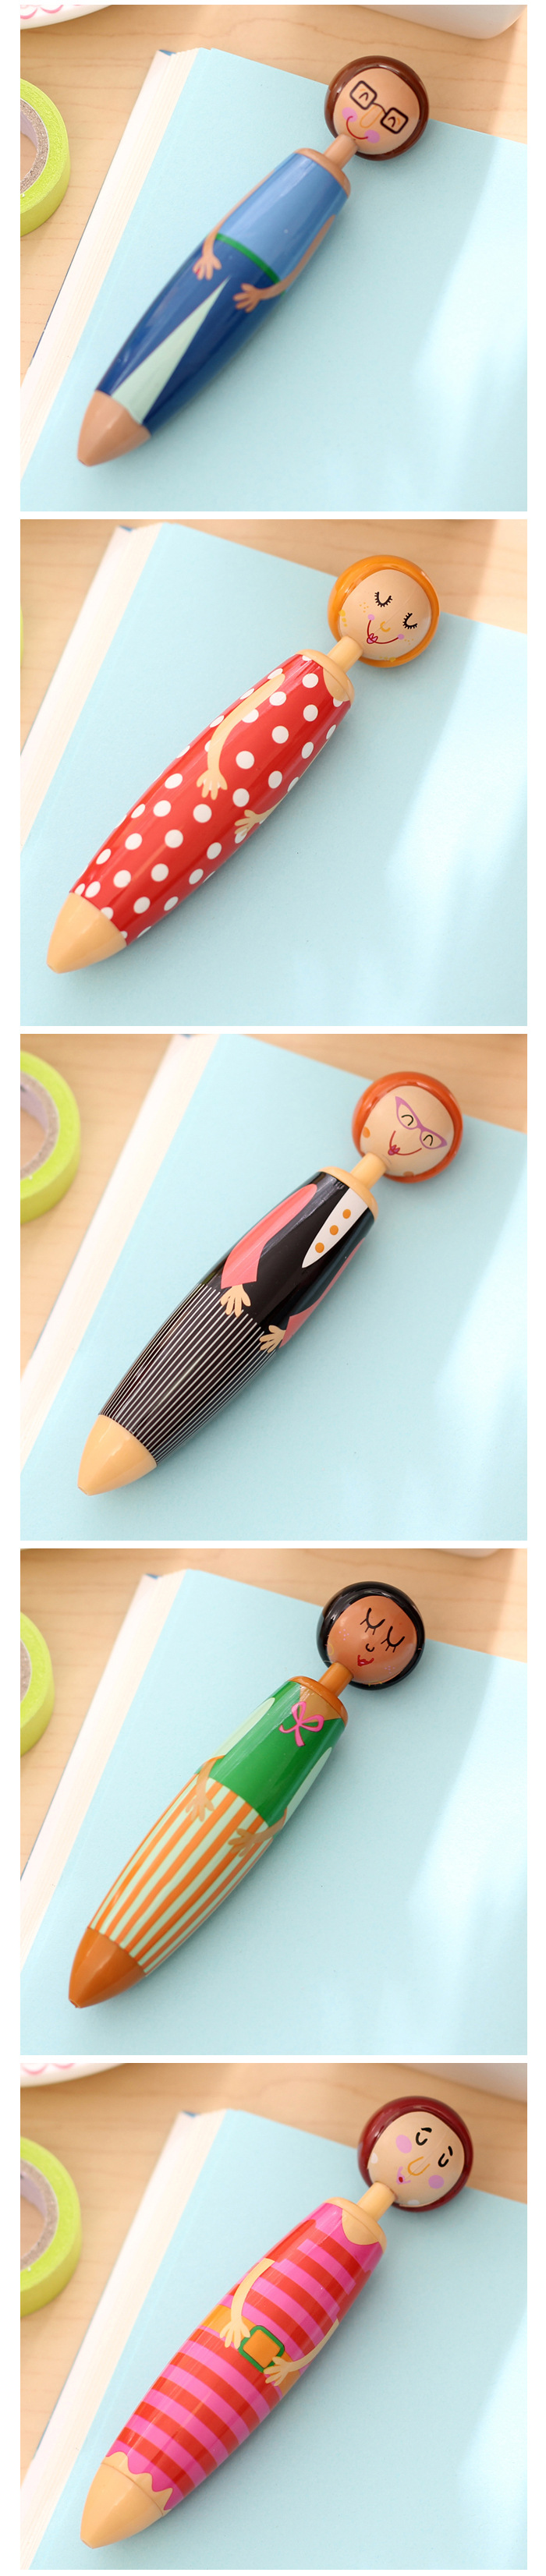 可愛人偶原子筆 創意造型胖胖筆 文具用品 造型原子筆 人物造型圓珠筆